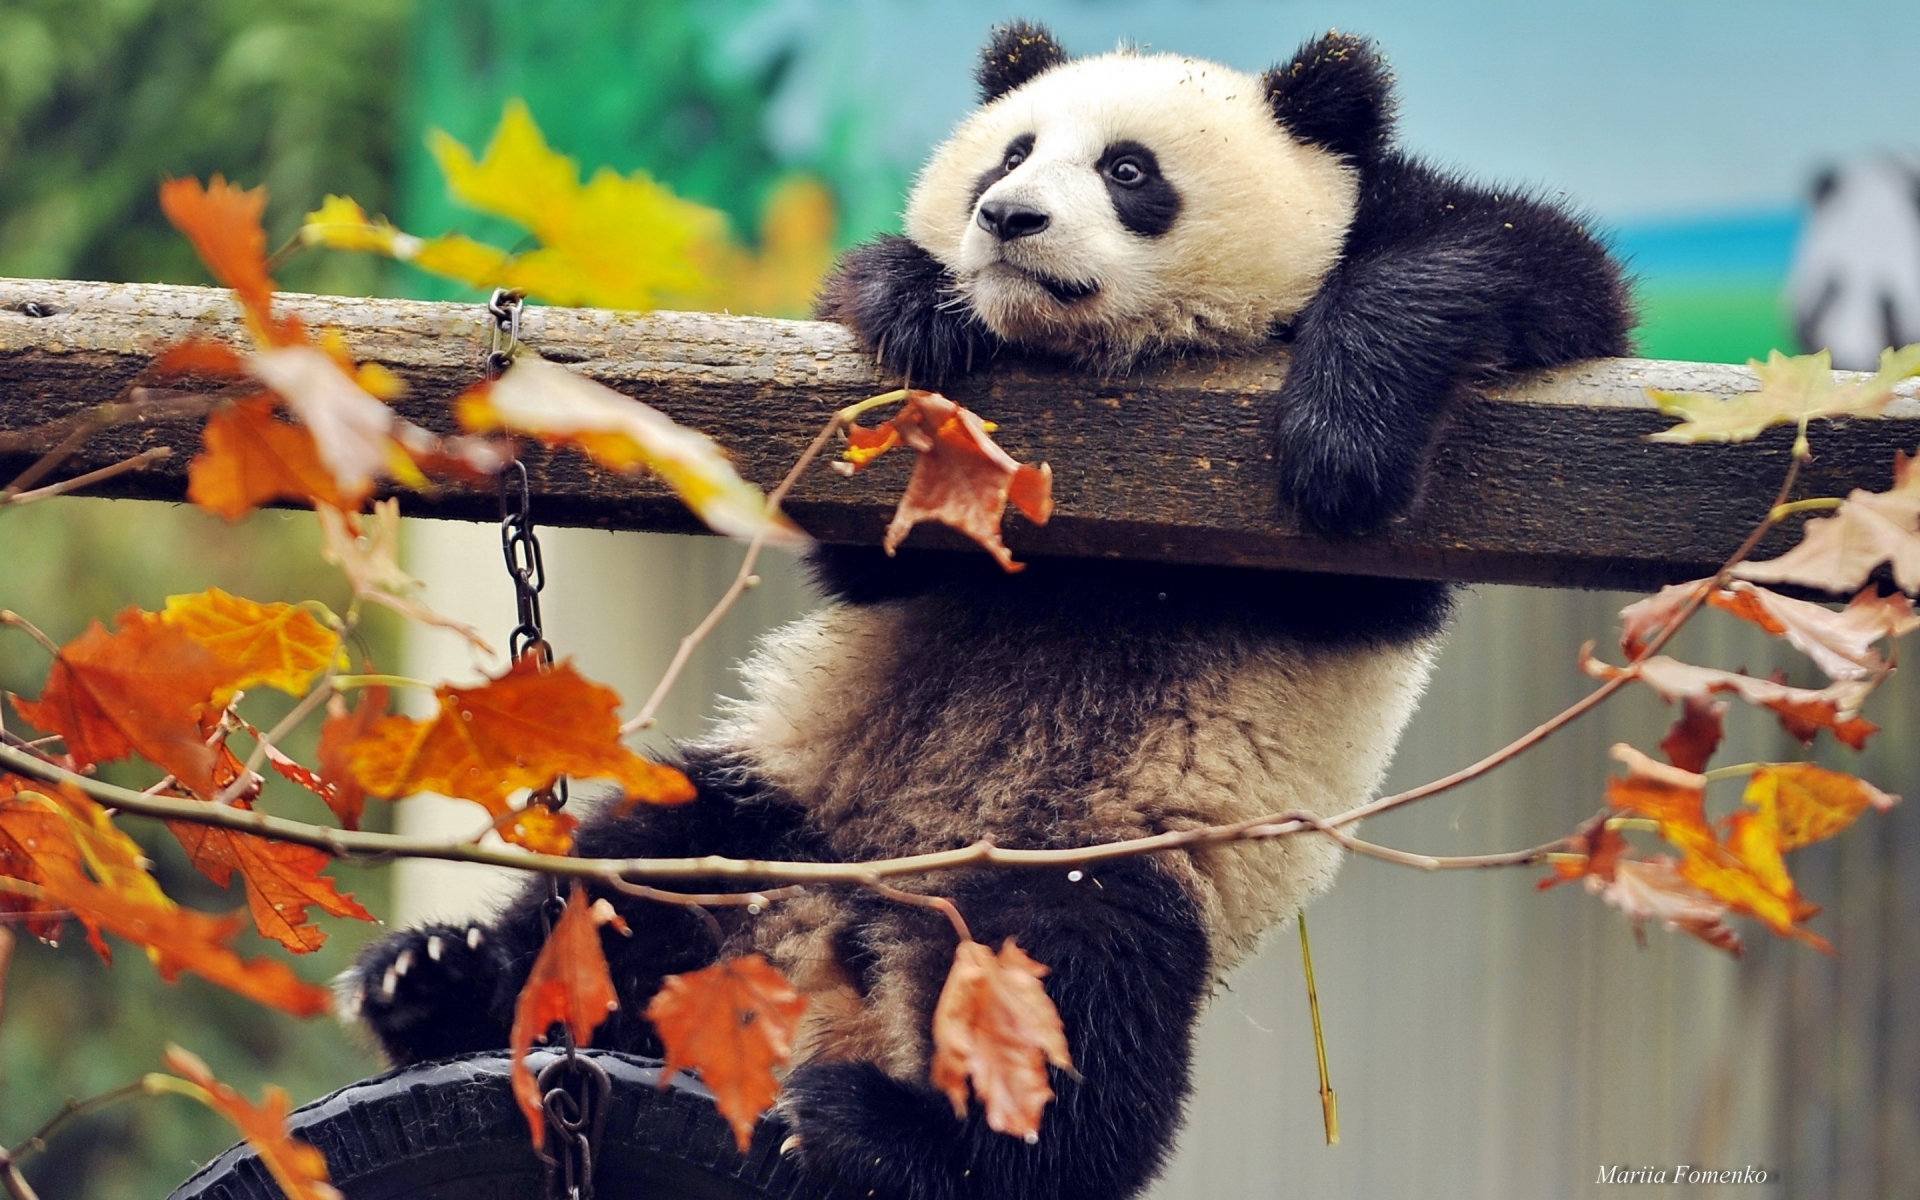 Cute Panda Climbing for 1920 x 1200 widescreen resolution